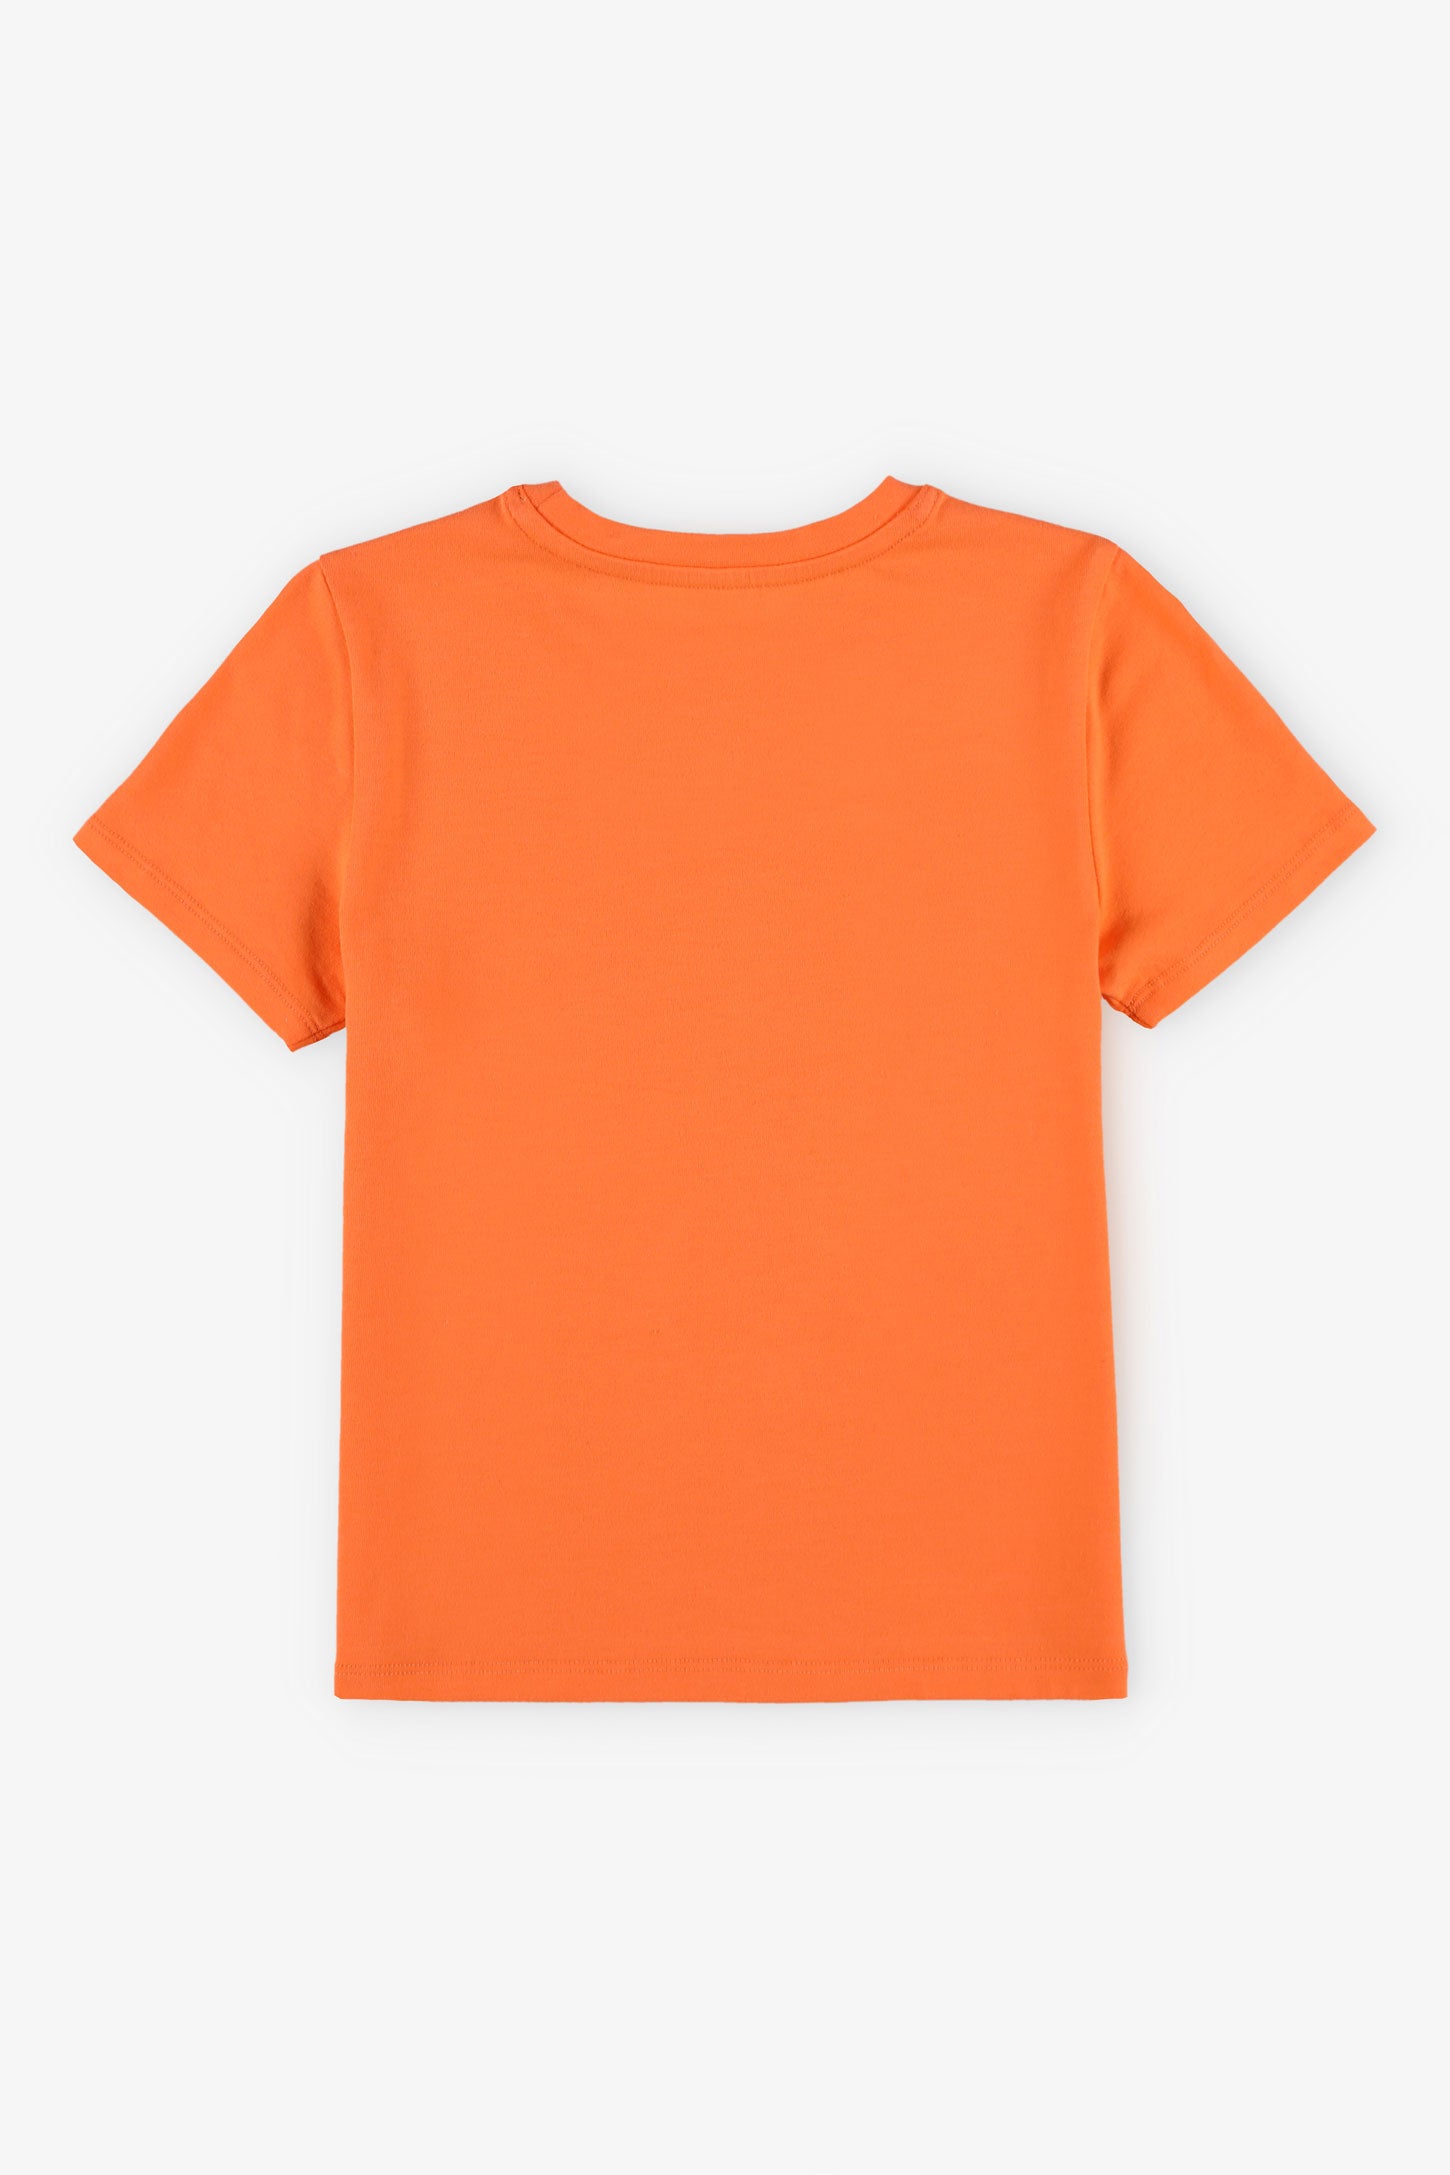 T-shirt col rond à poche, 2/20$ - Enfant garçon && ORANGE